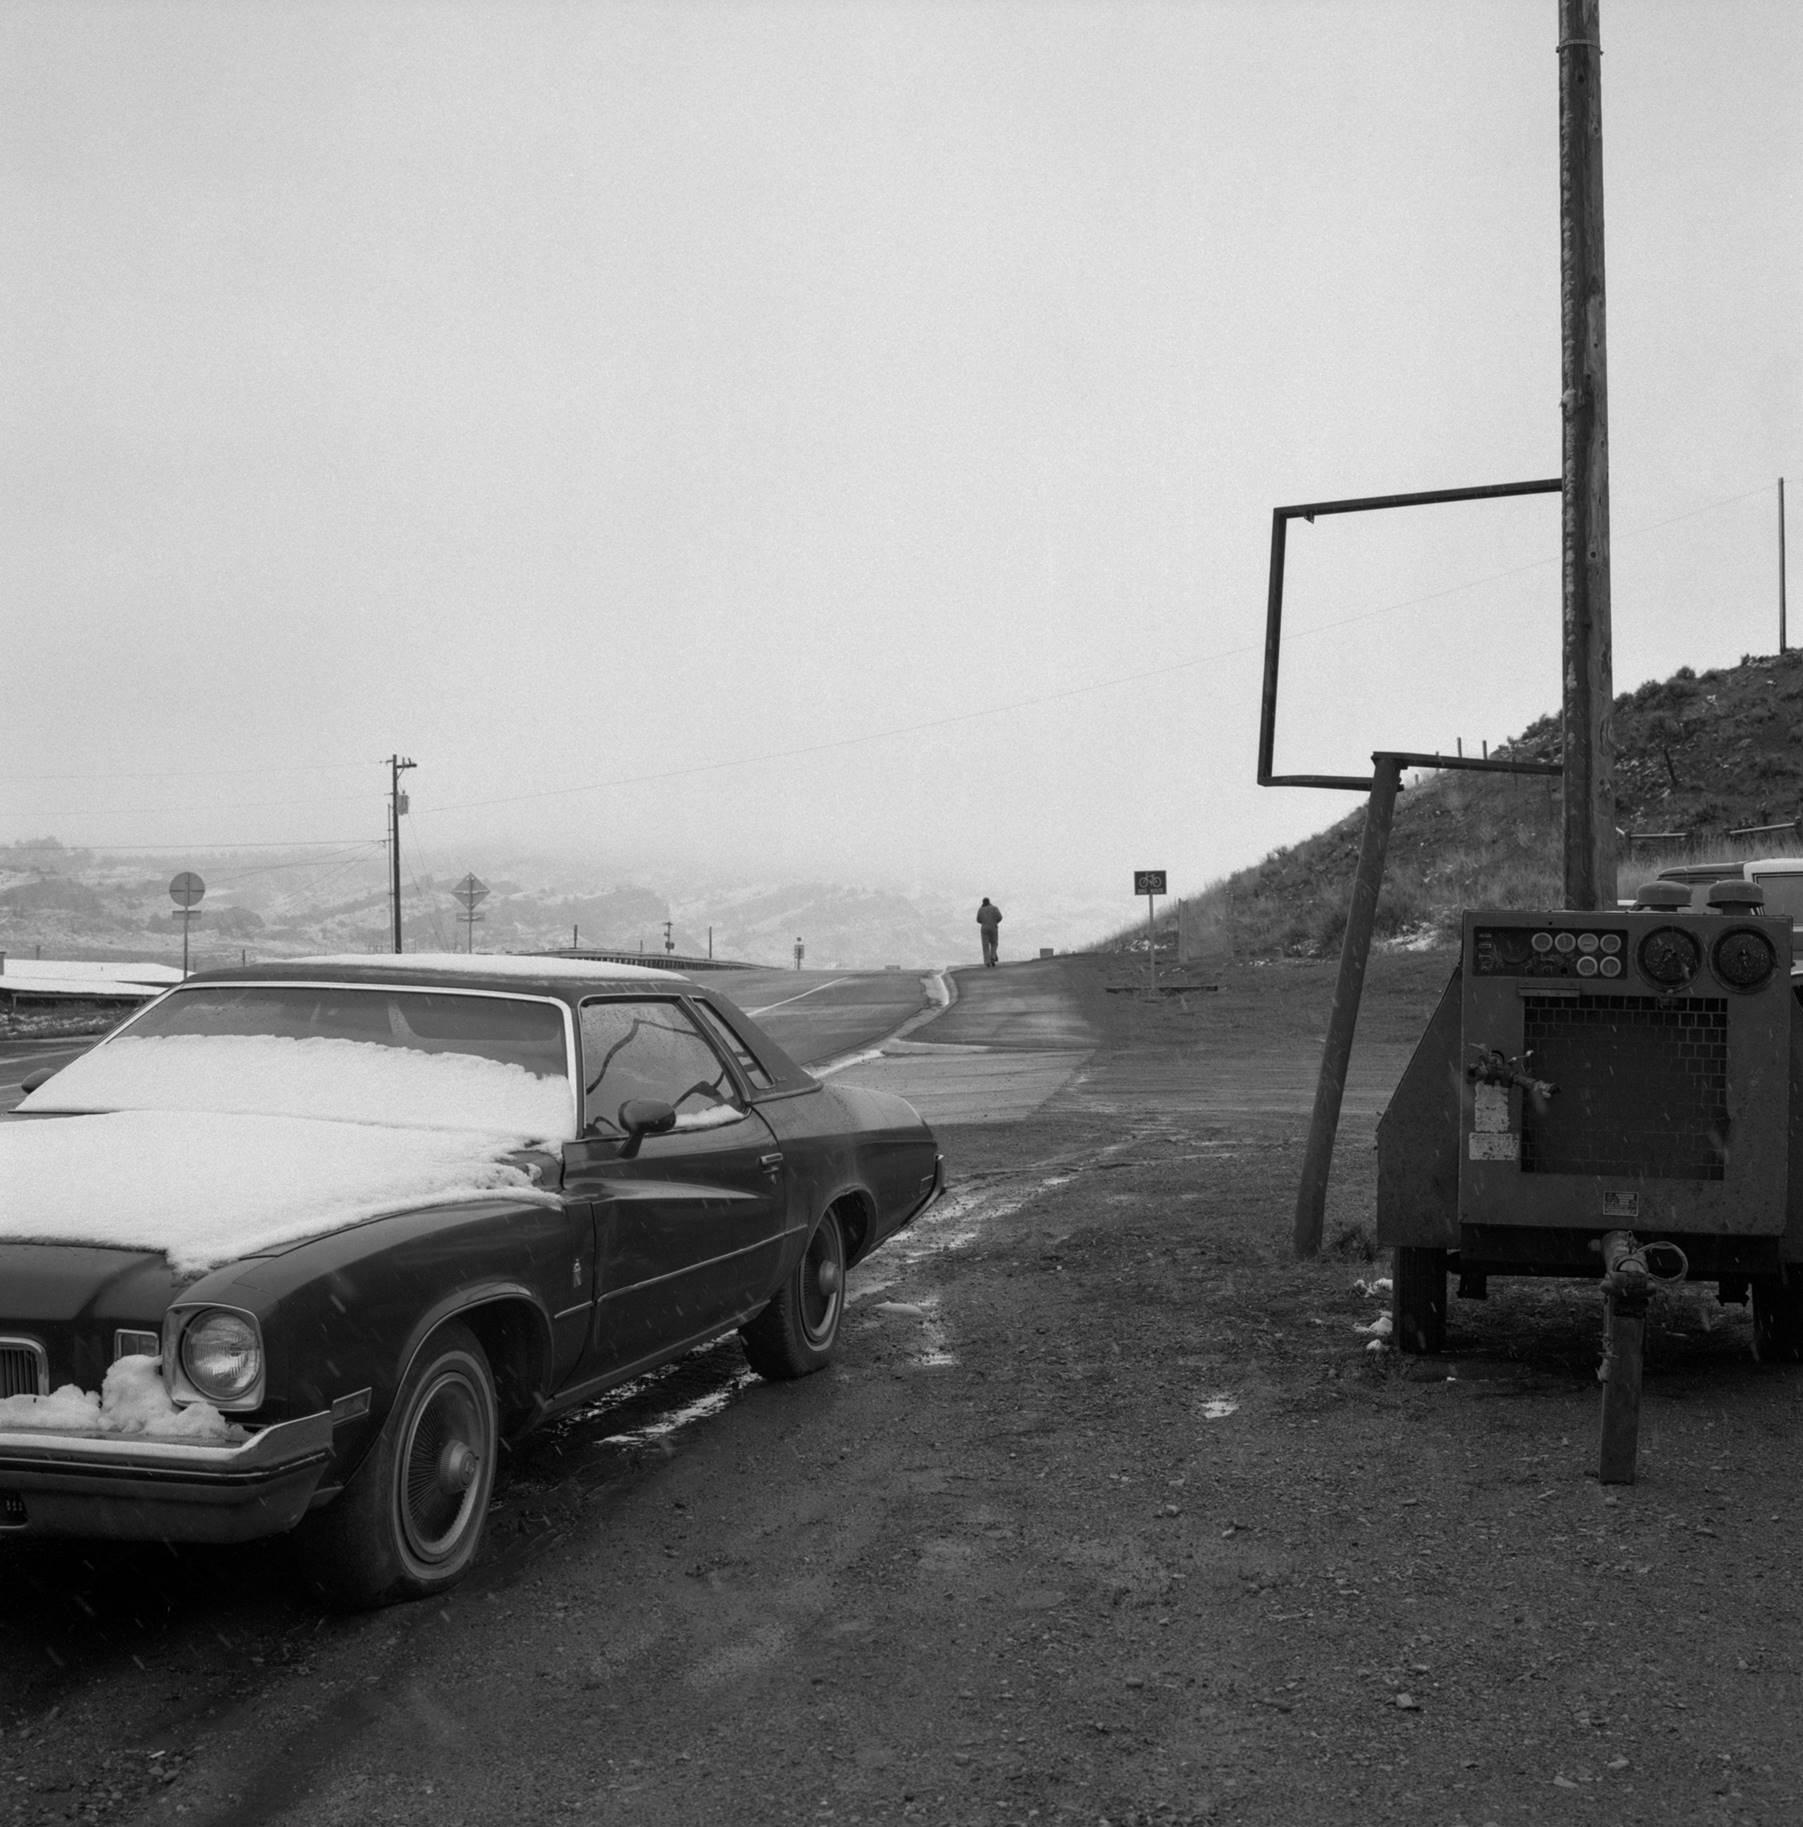 svart vit fotografi med en snötäckt bil i förgrunden och en människogestalt i bakgrunden i slutet av en landsväg